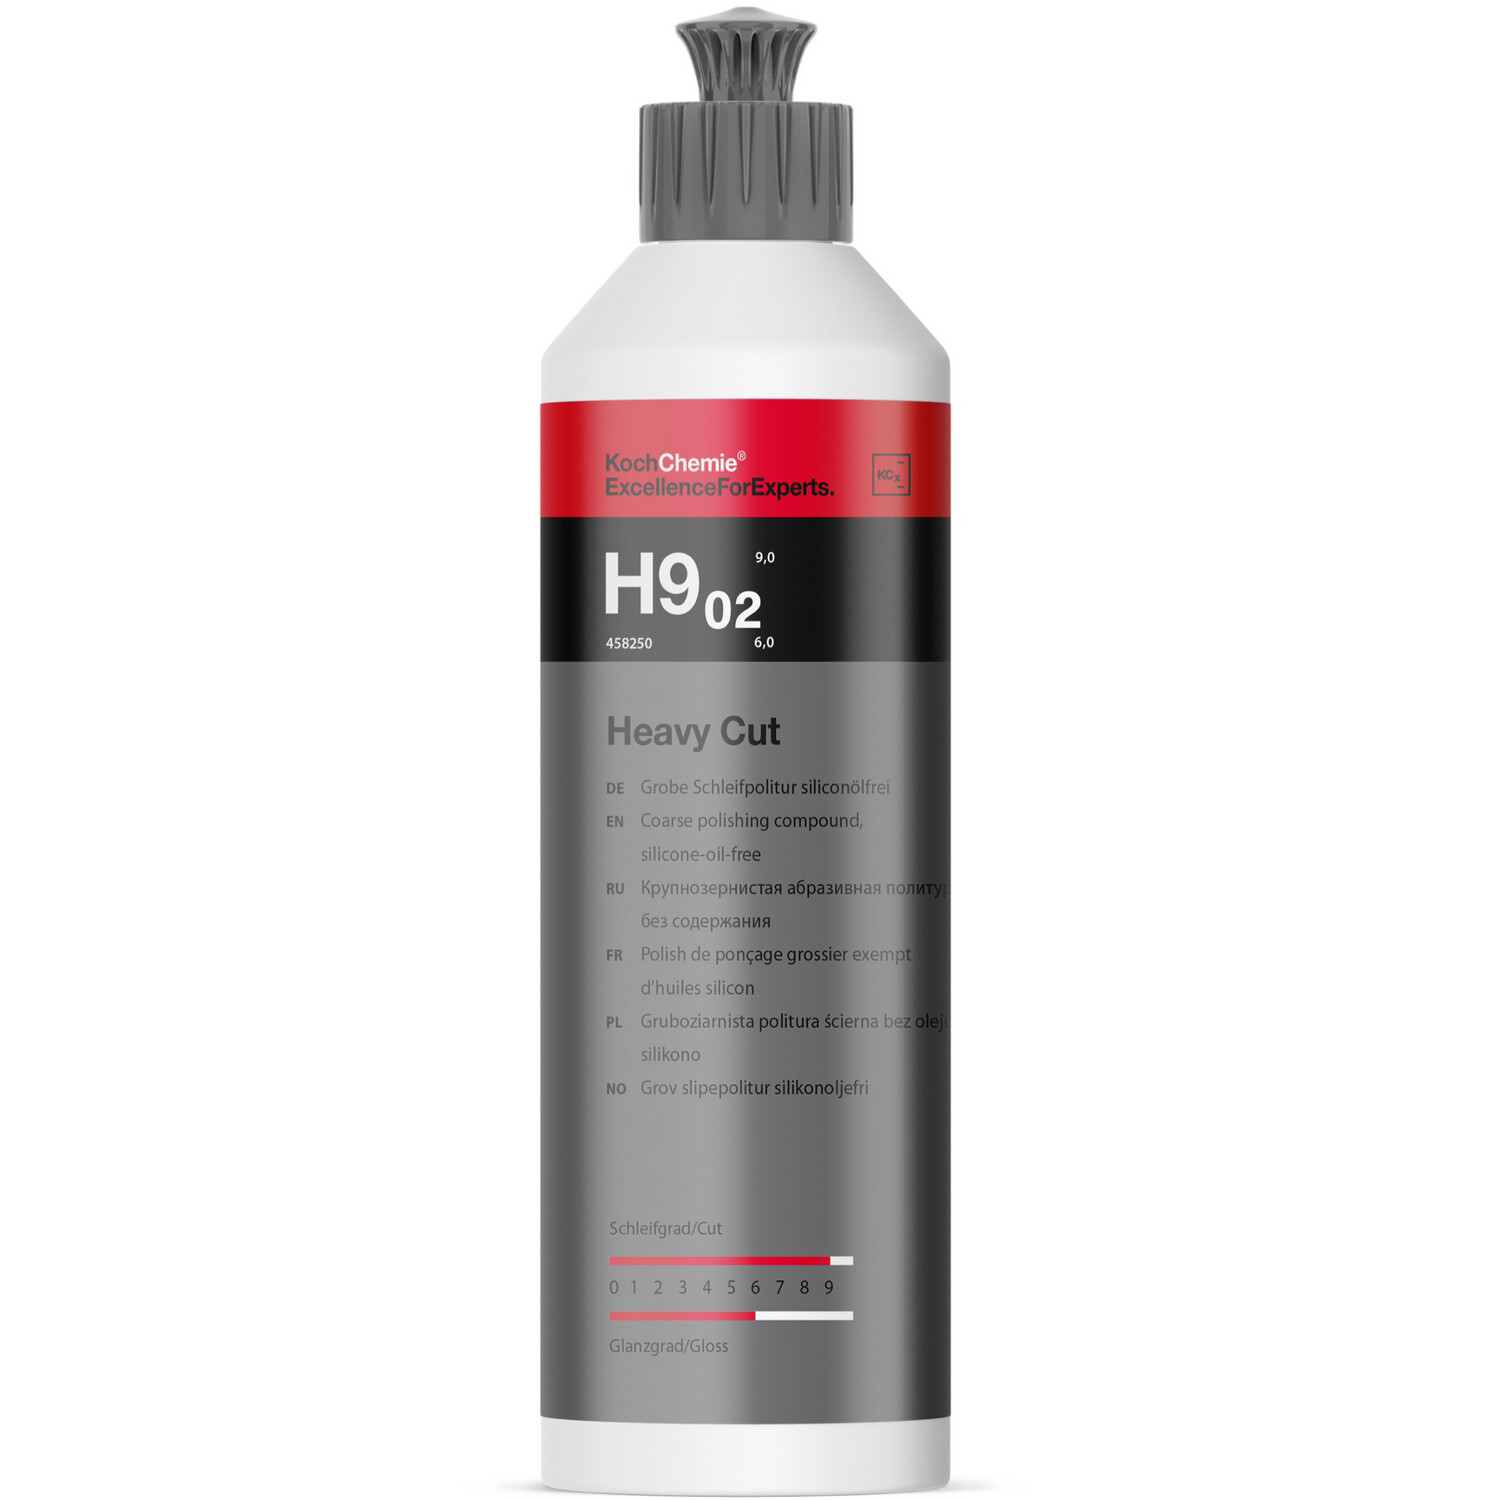 Heavy Cut H9.02 - Grobe Schleifpolitur siliconölfrei